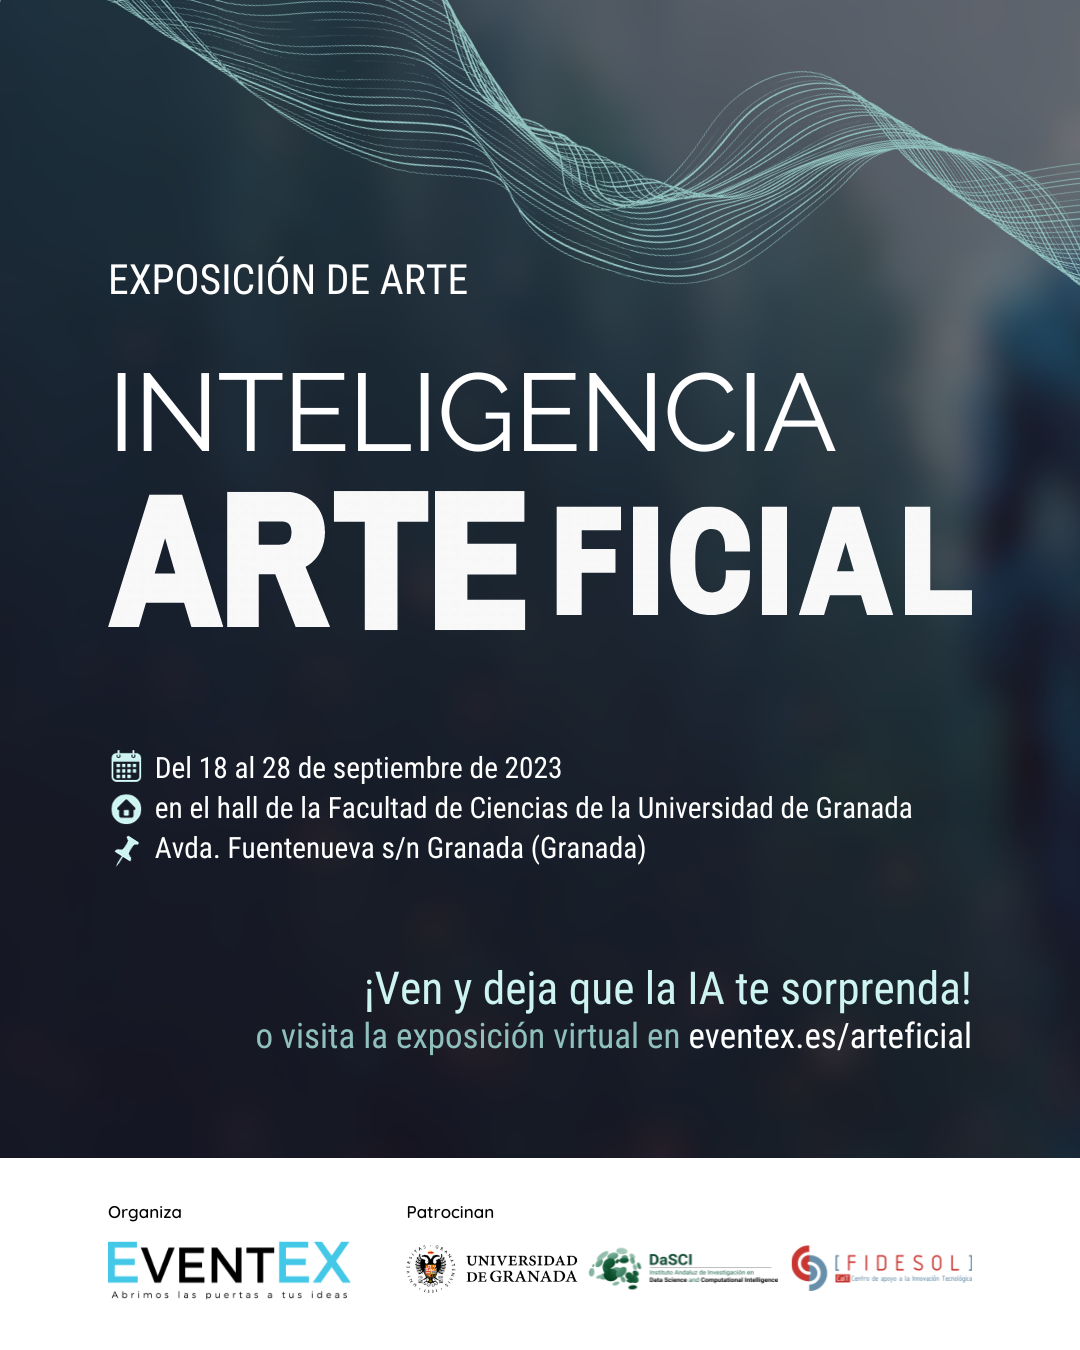 Exposición "Inteligencia ARTEficial" en el Hall de la Facultad de Ciencias de la Universidad de Granada